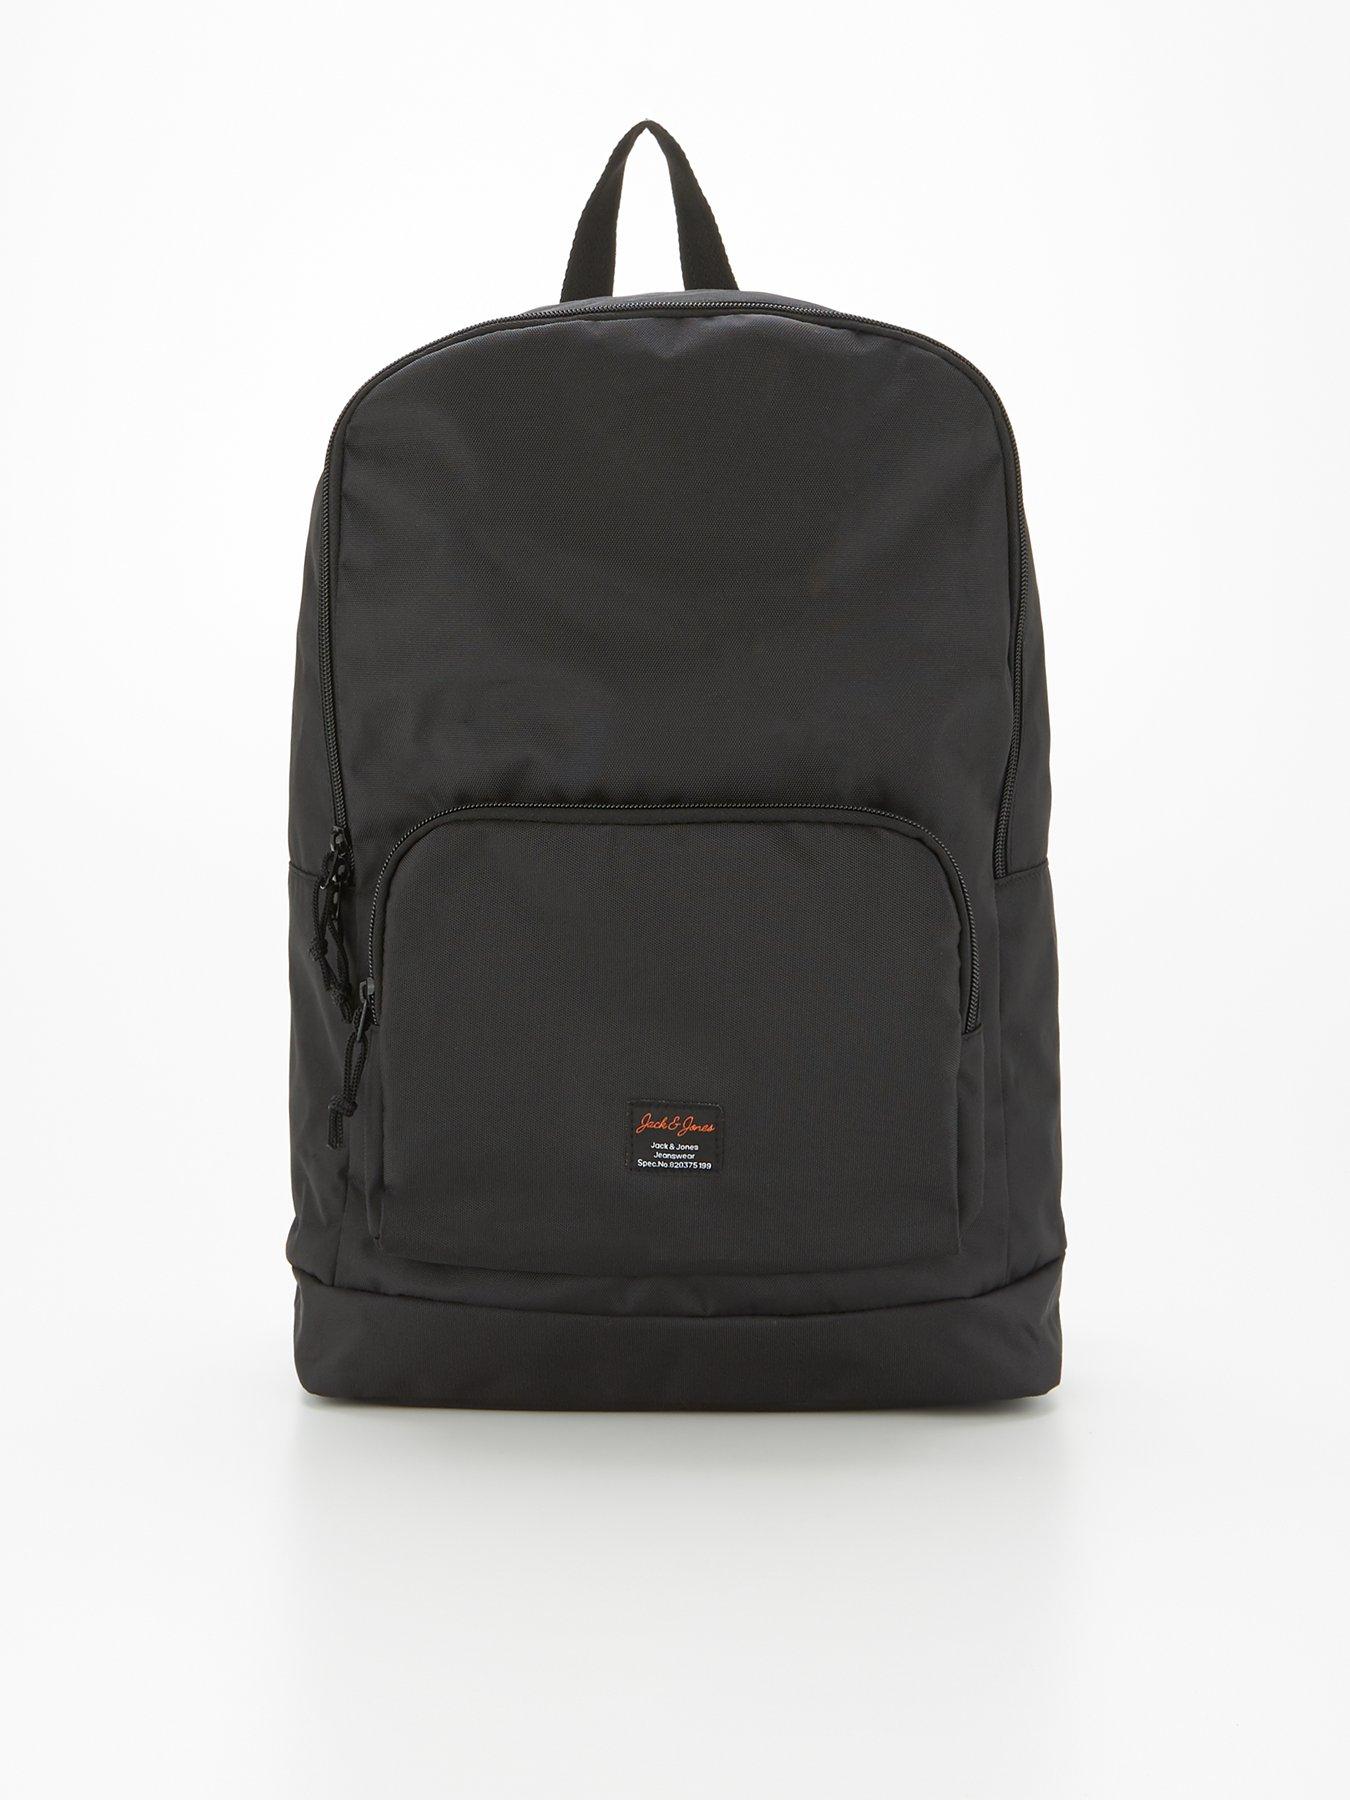  Backpack - Black